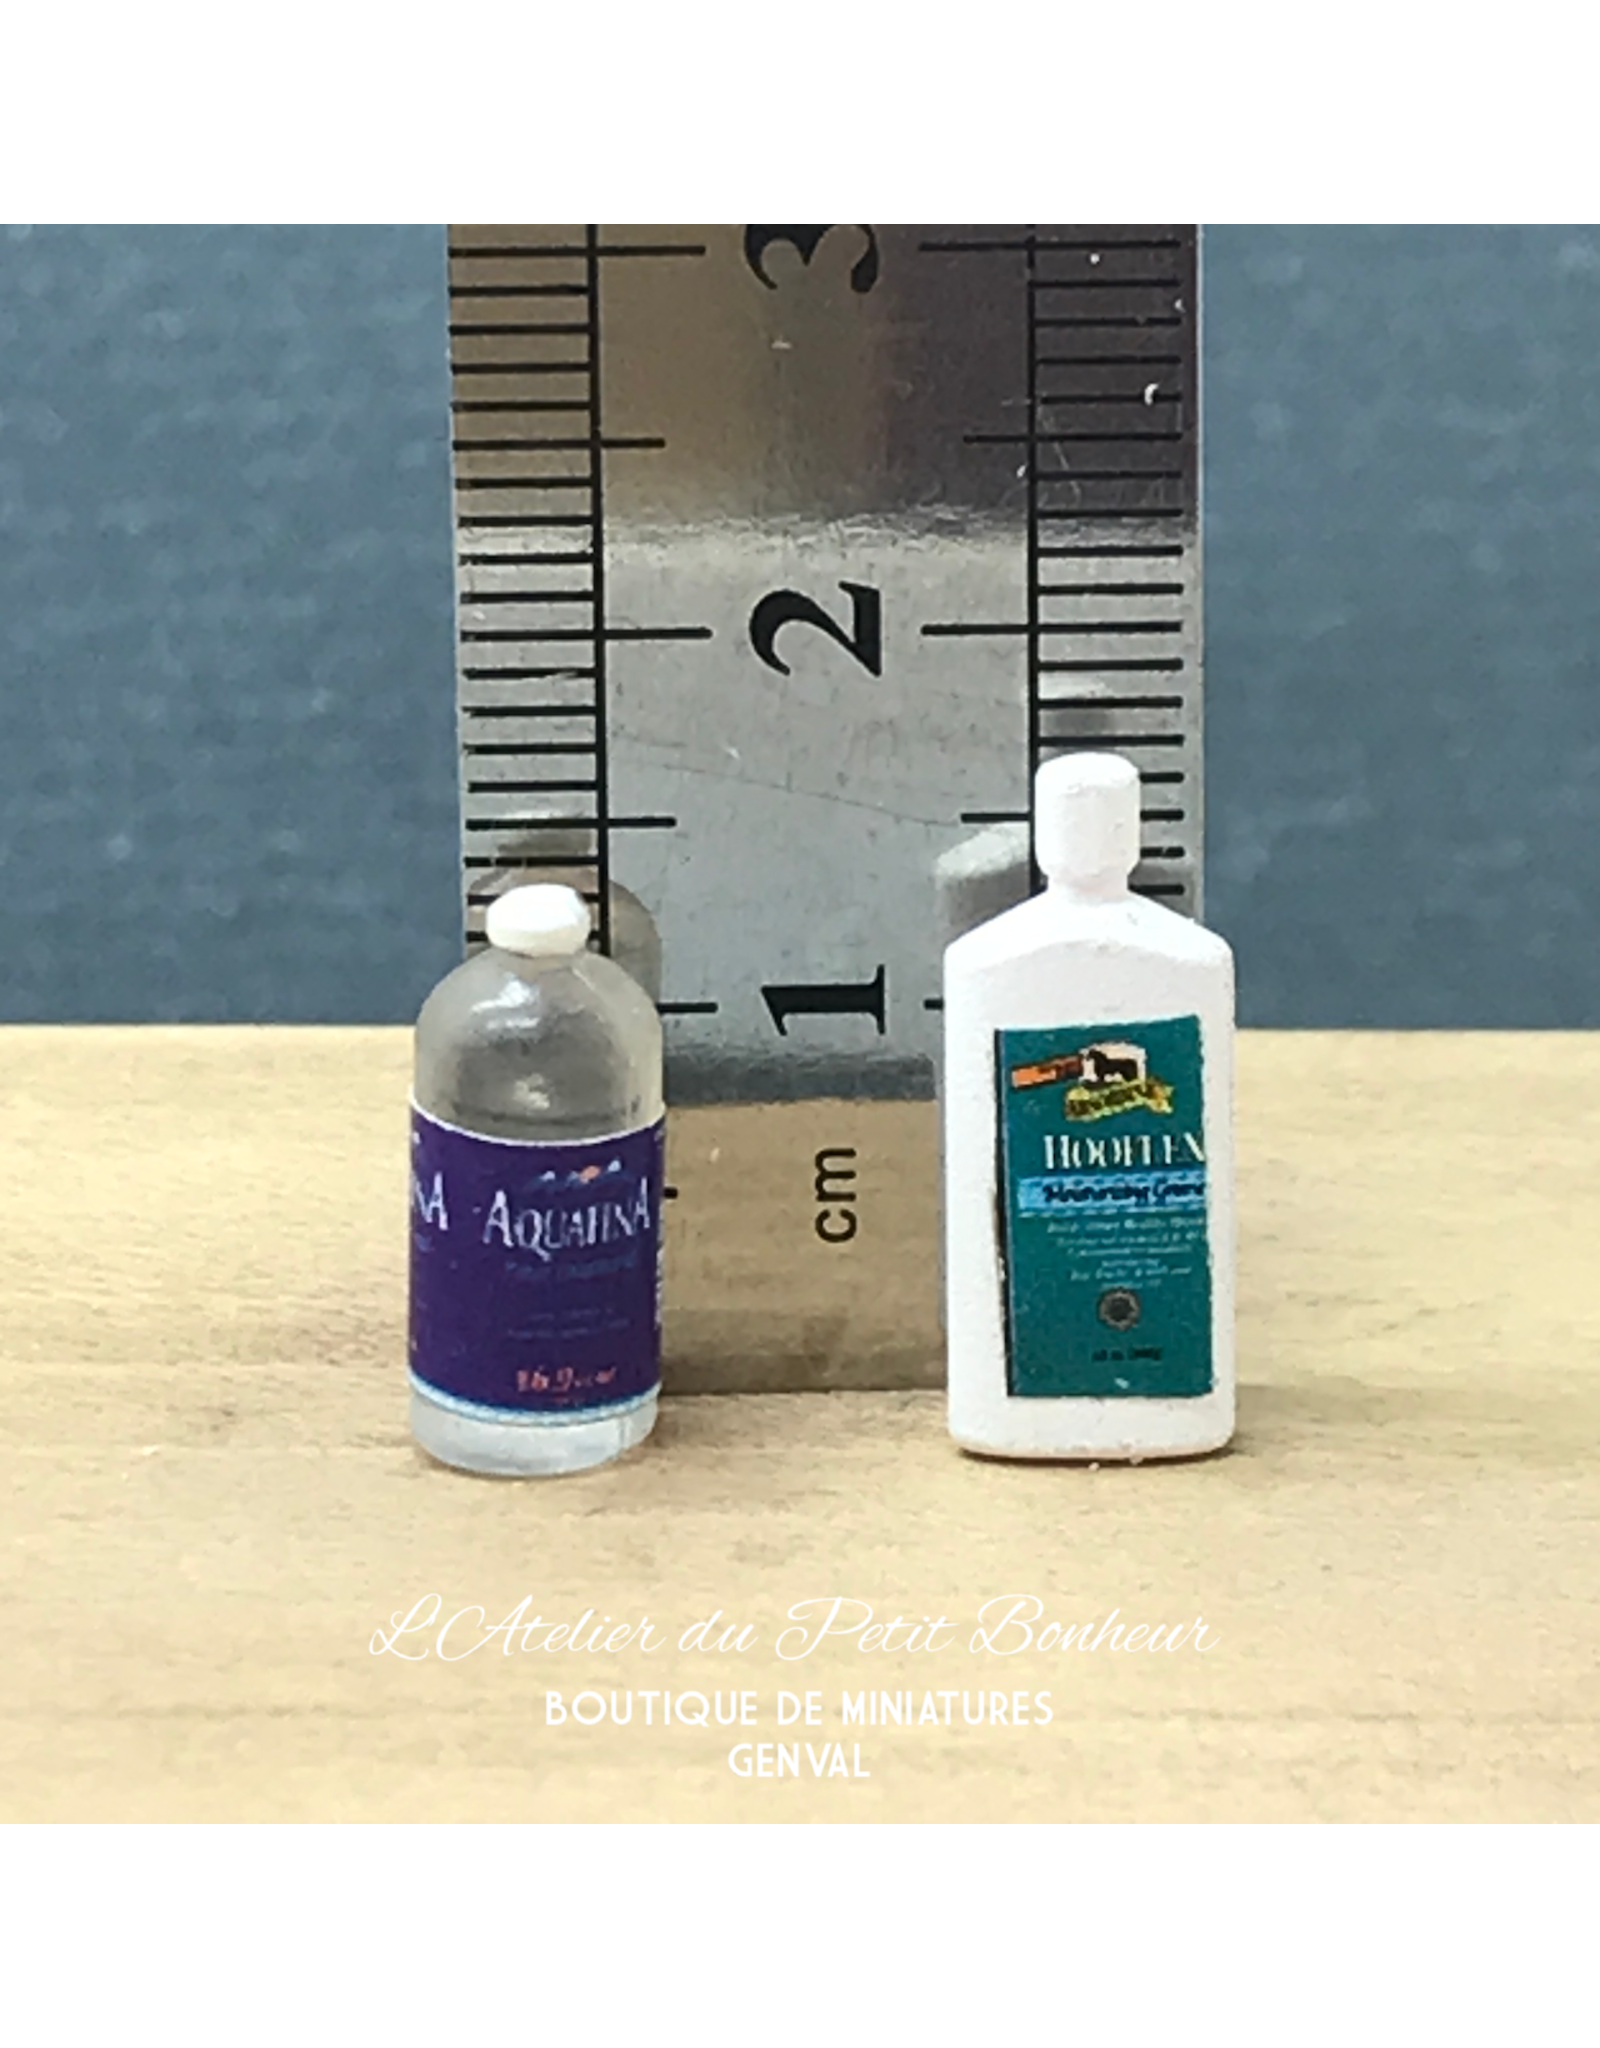 2 bouteilles de shampooing miniature 1:12